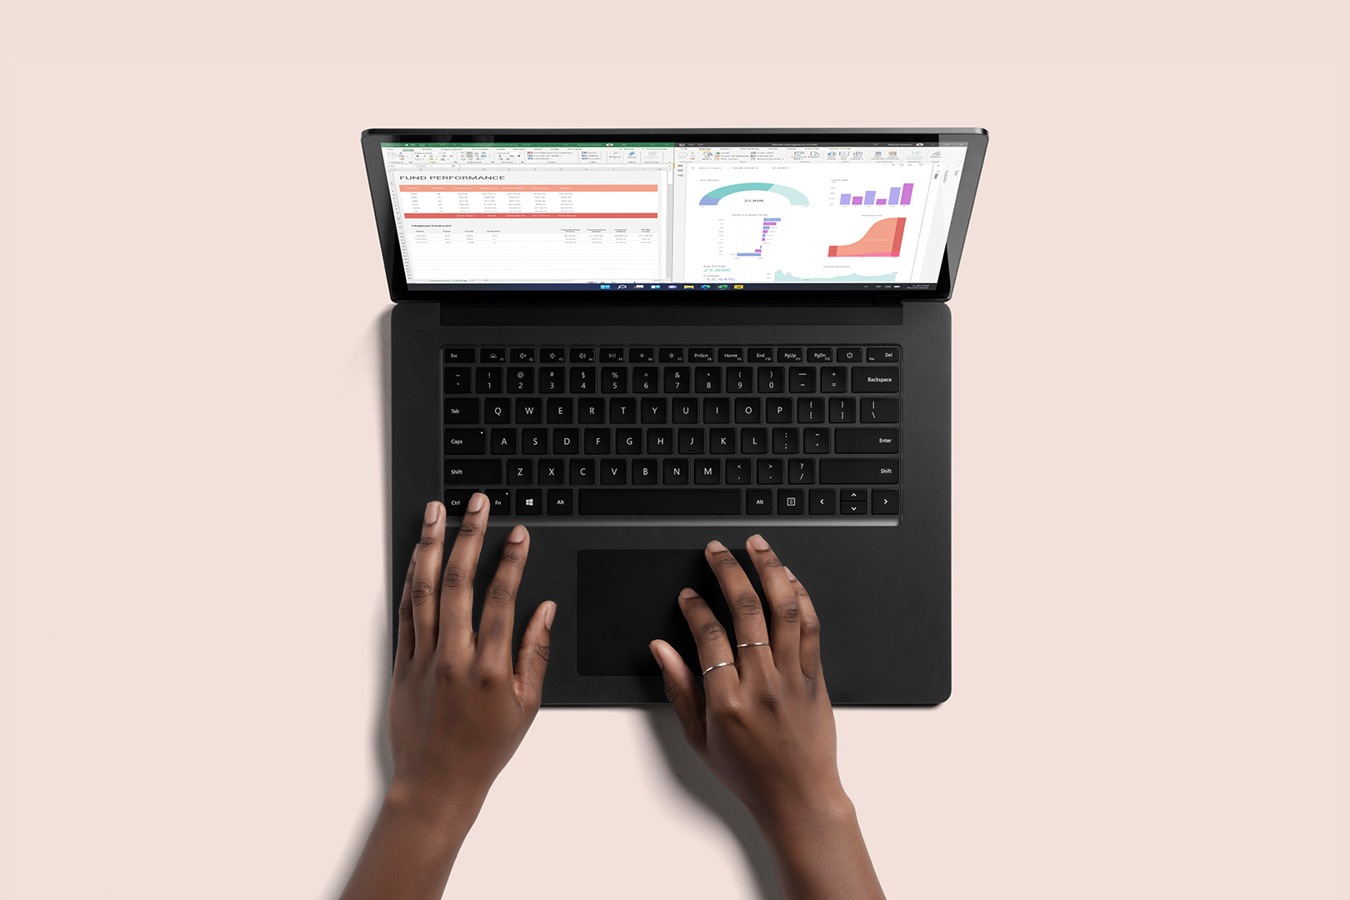 Κατακόρυφη όψη ενός Surface Laptop 4 σε μαύρο χρώμα, ενώ δύο χέρια πληκτρολογούν στο πληκτρολόγιο
